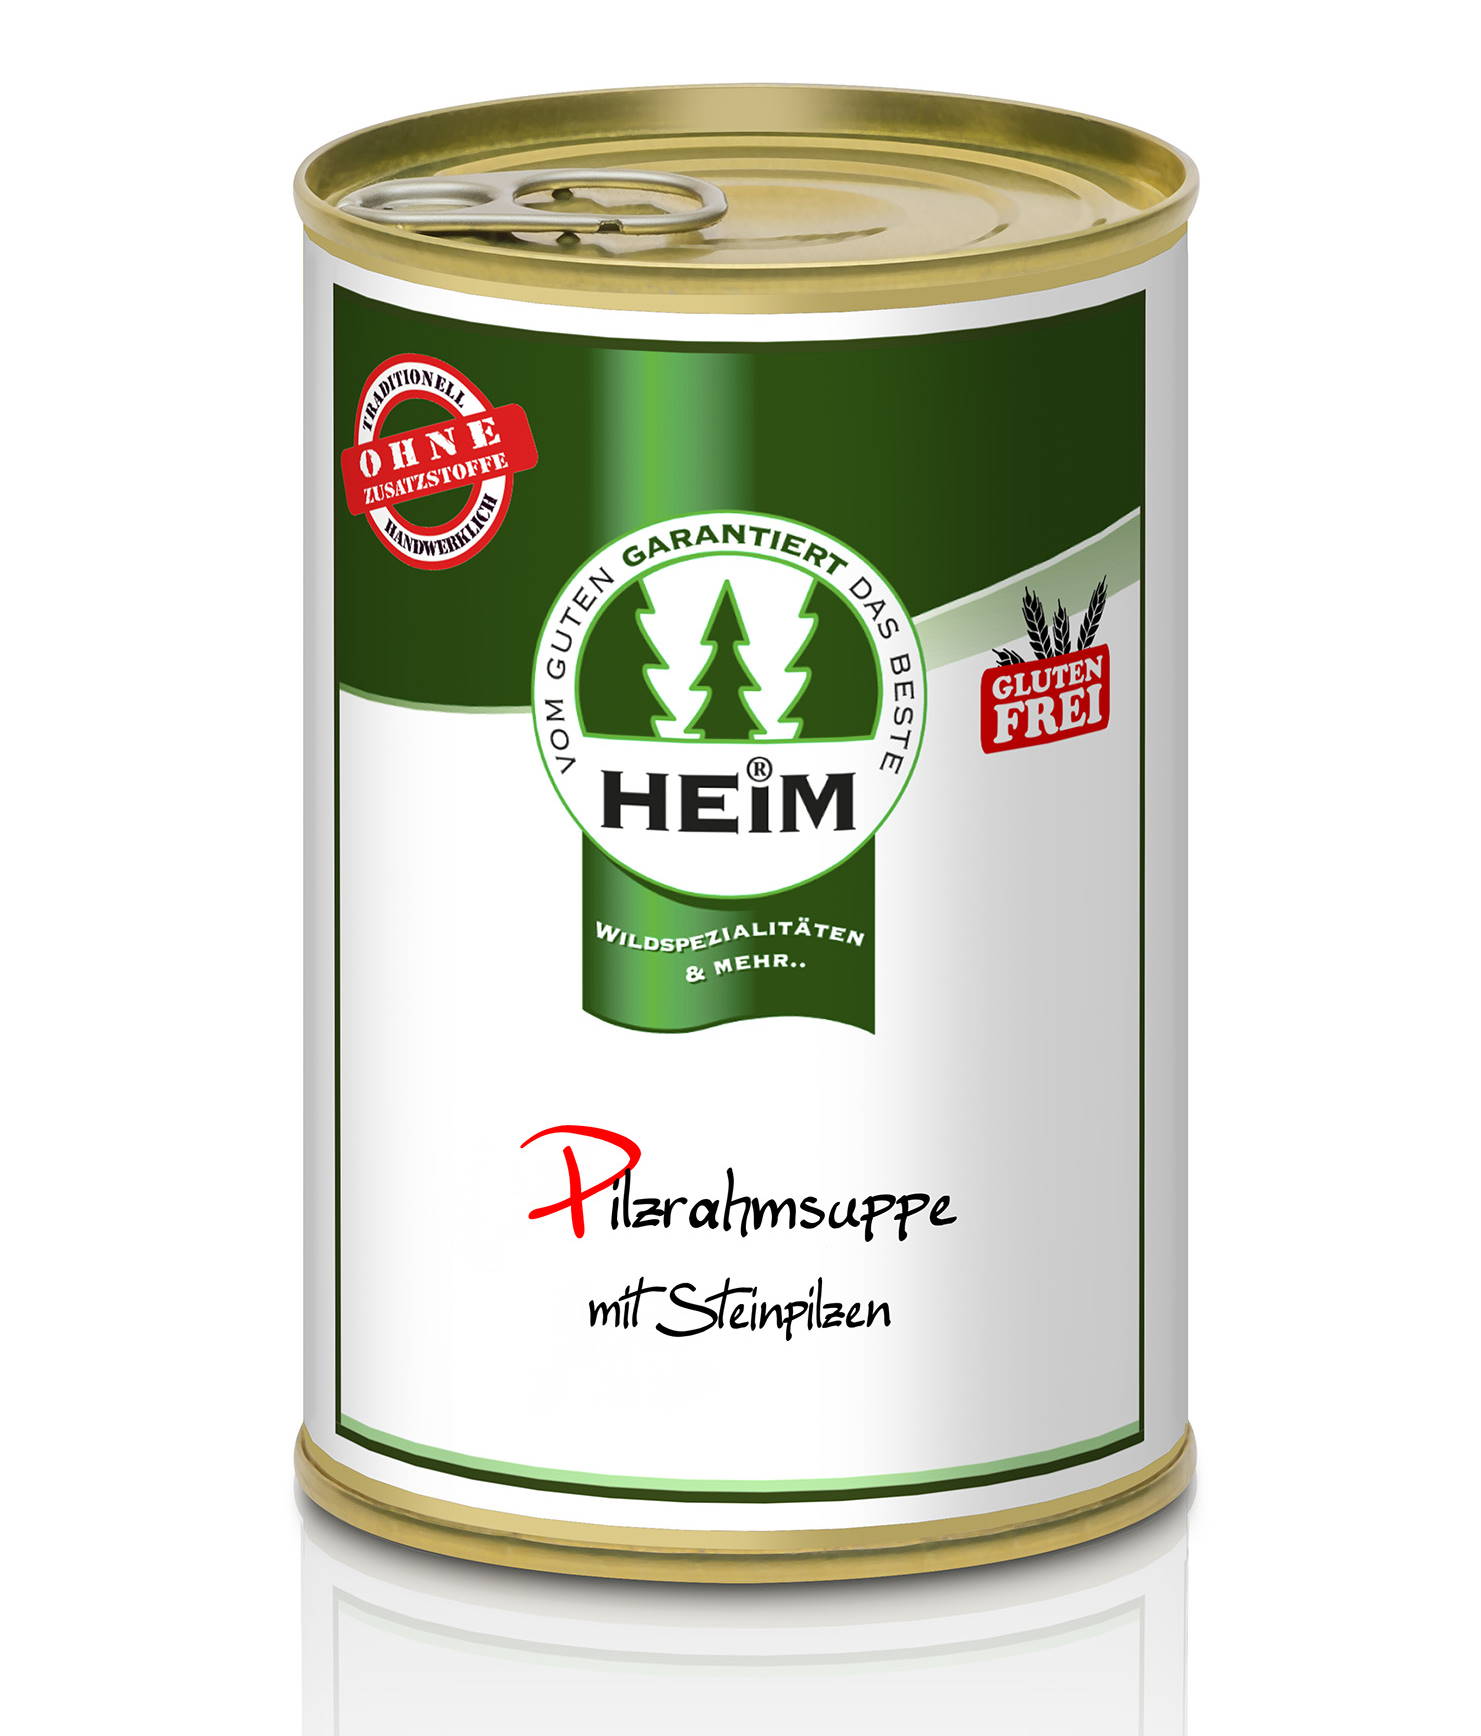 Pilz-Rahmsuppe mit Steinpilzen (glutenfrei), HEIM 0,4 l